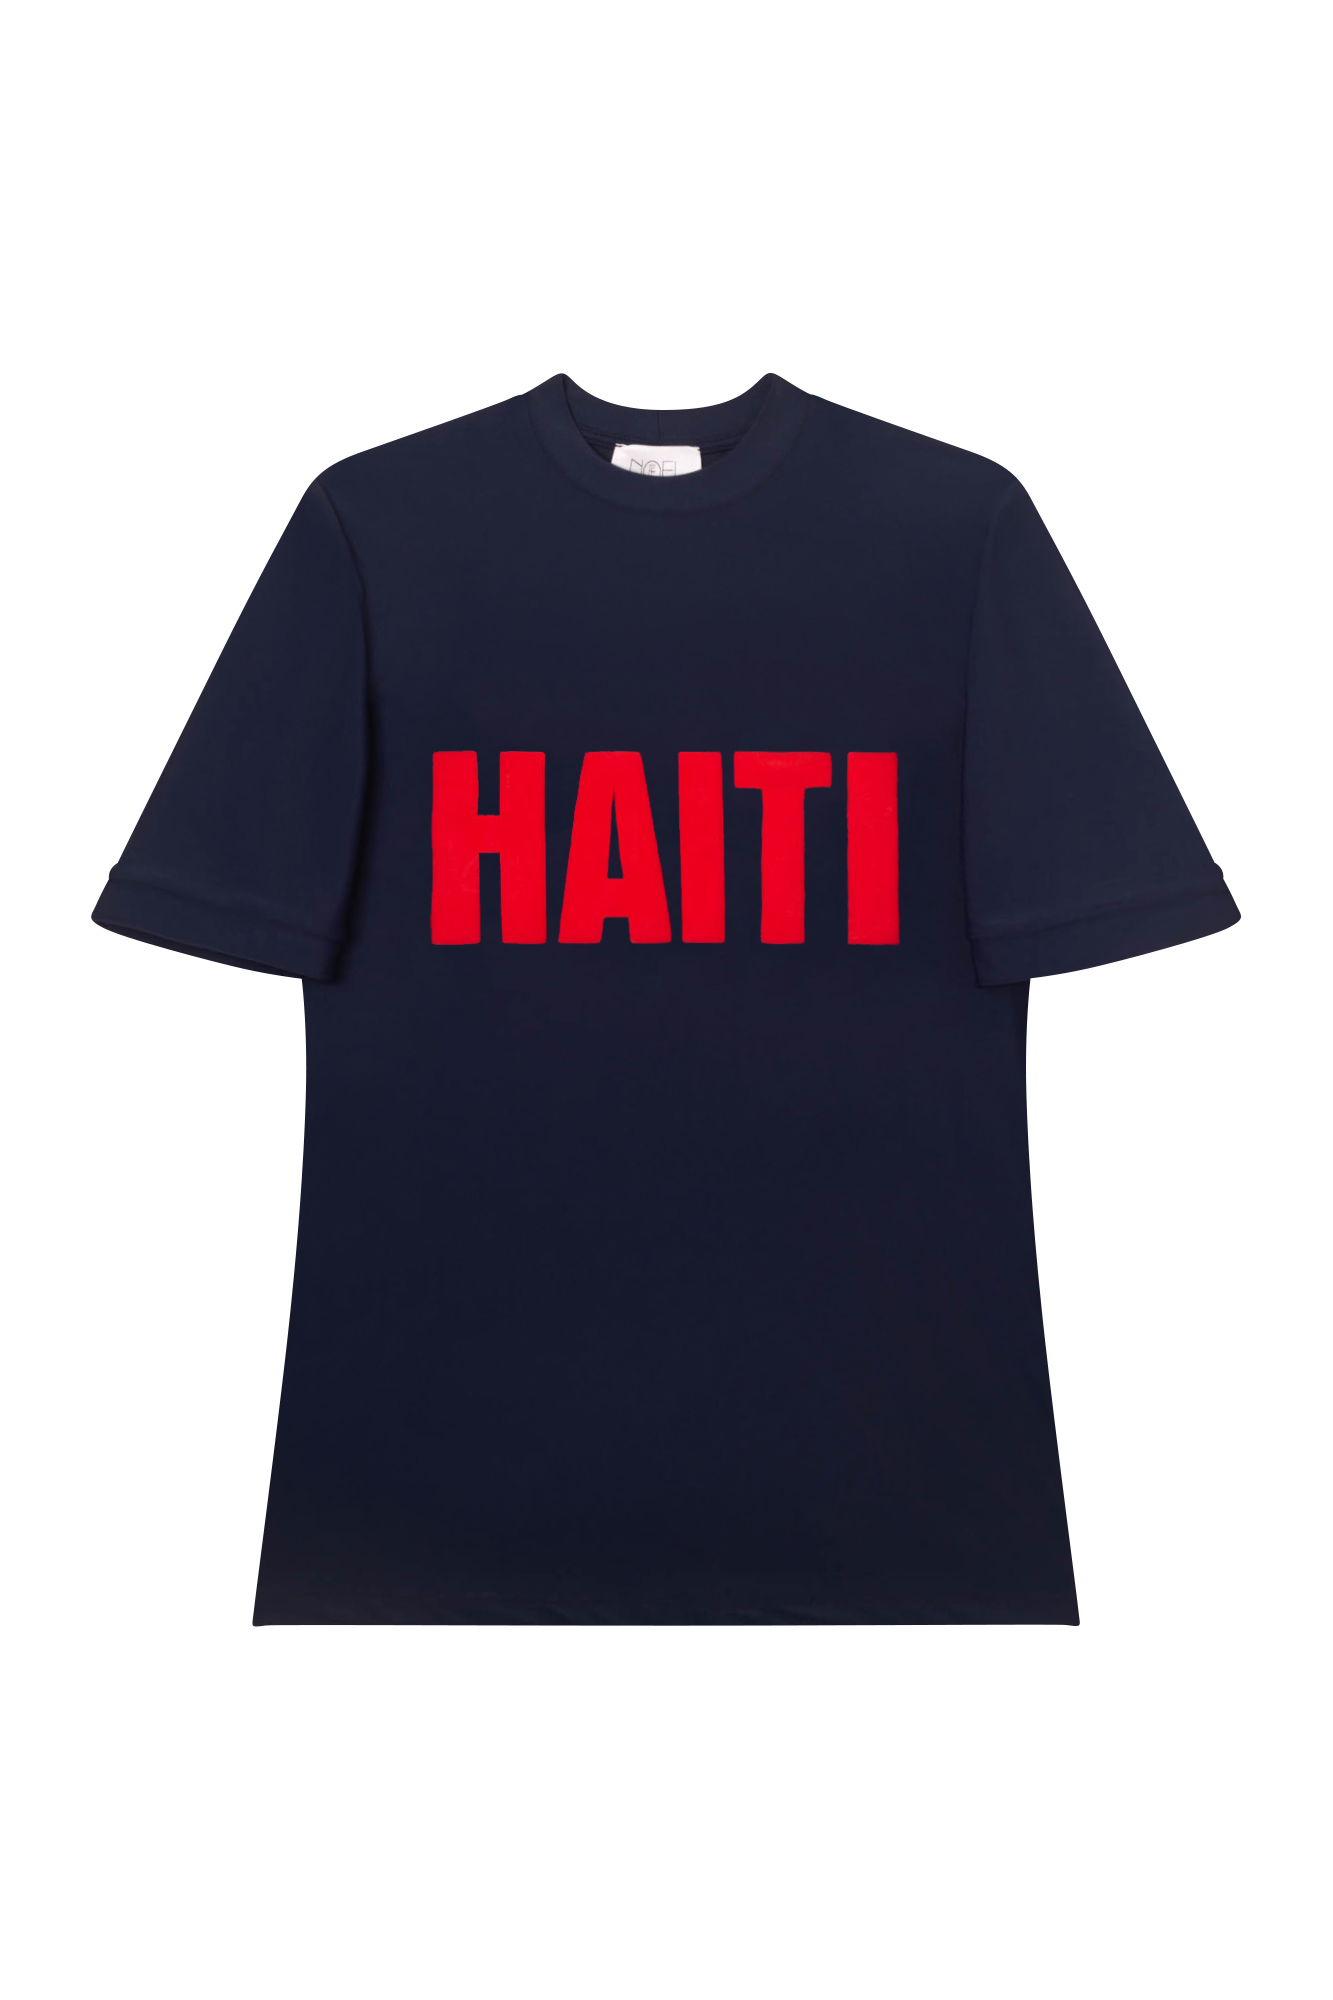 Haiti Navy/Red Swim Tee